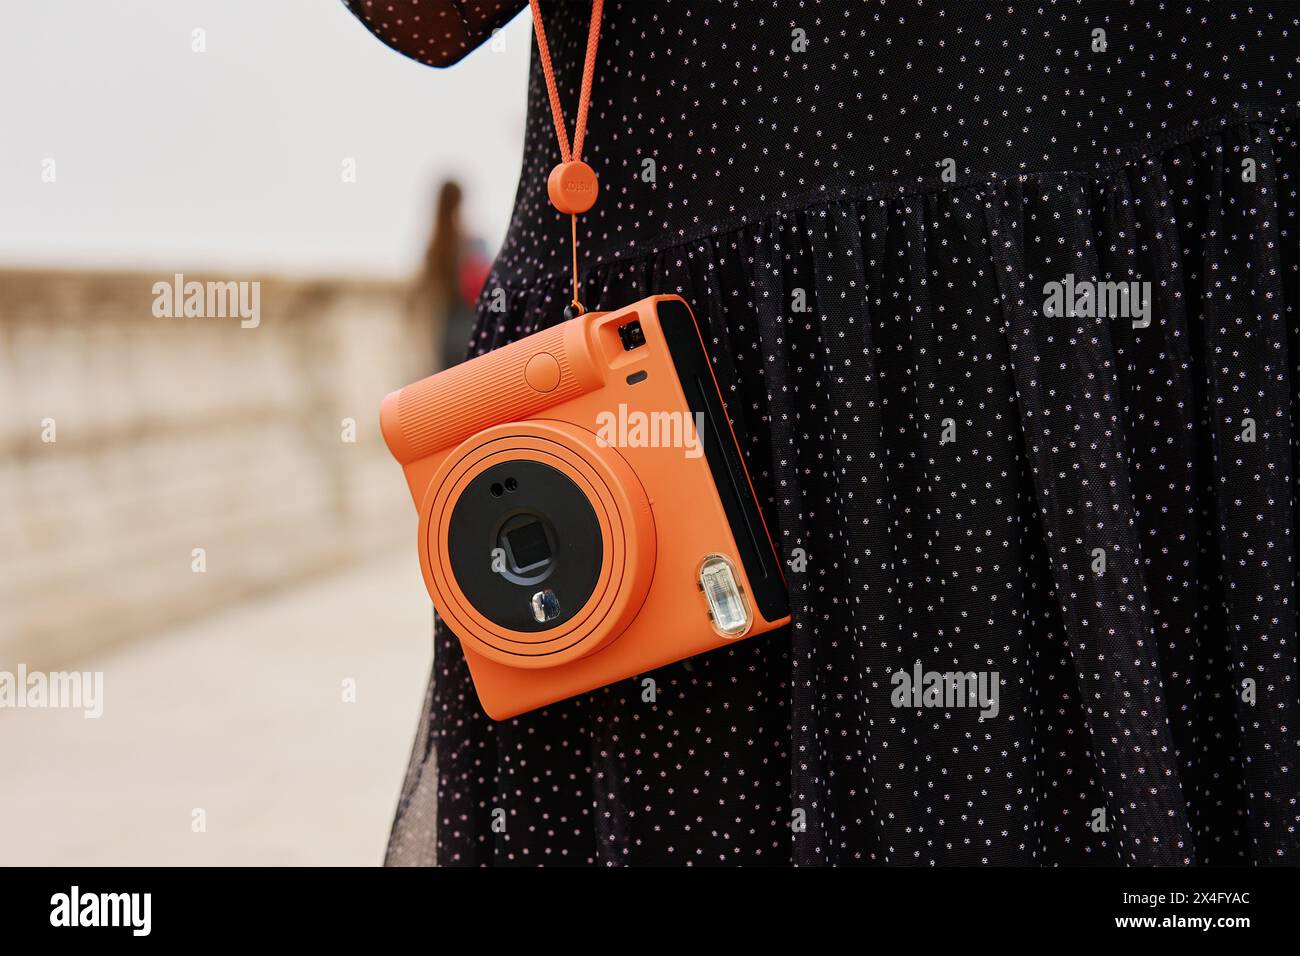 Frau mit orangefarbener Sofortkamera. Touristen halten Erinnerungen während der Reise mit einer alten Kamera fest Stockfoto